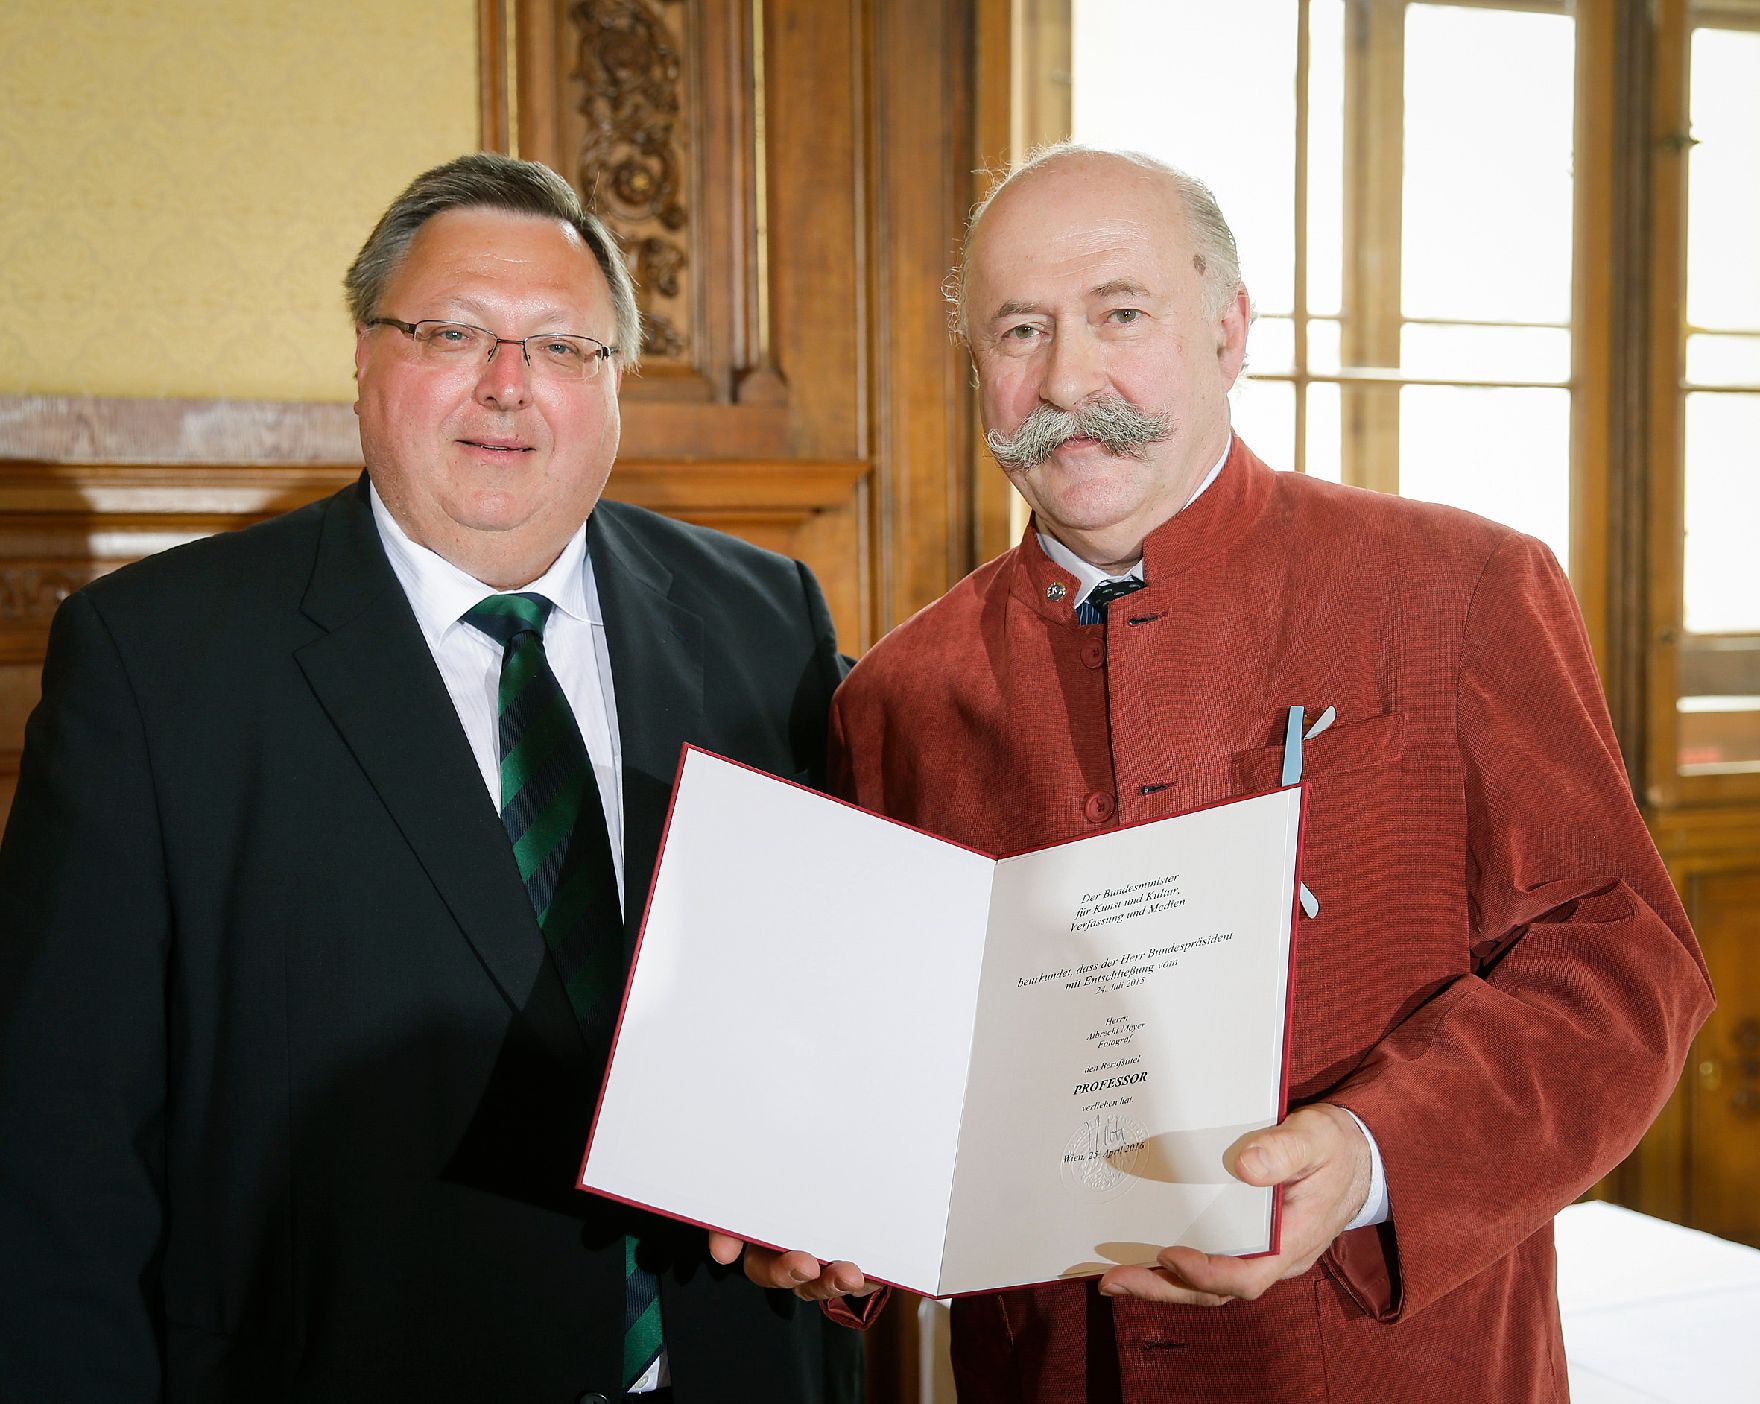 Am 25. April 2016 überreichte Ministerialrat Reinhold Hohengartner (l.) die Urkunde, mit der Albrecht Meyer (r.) der Berufstitel Professor verliehen wurde.